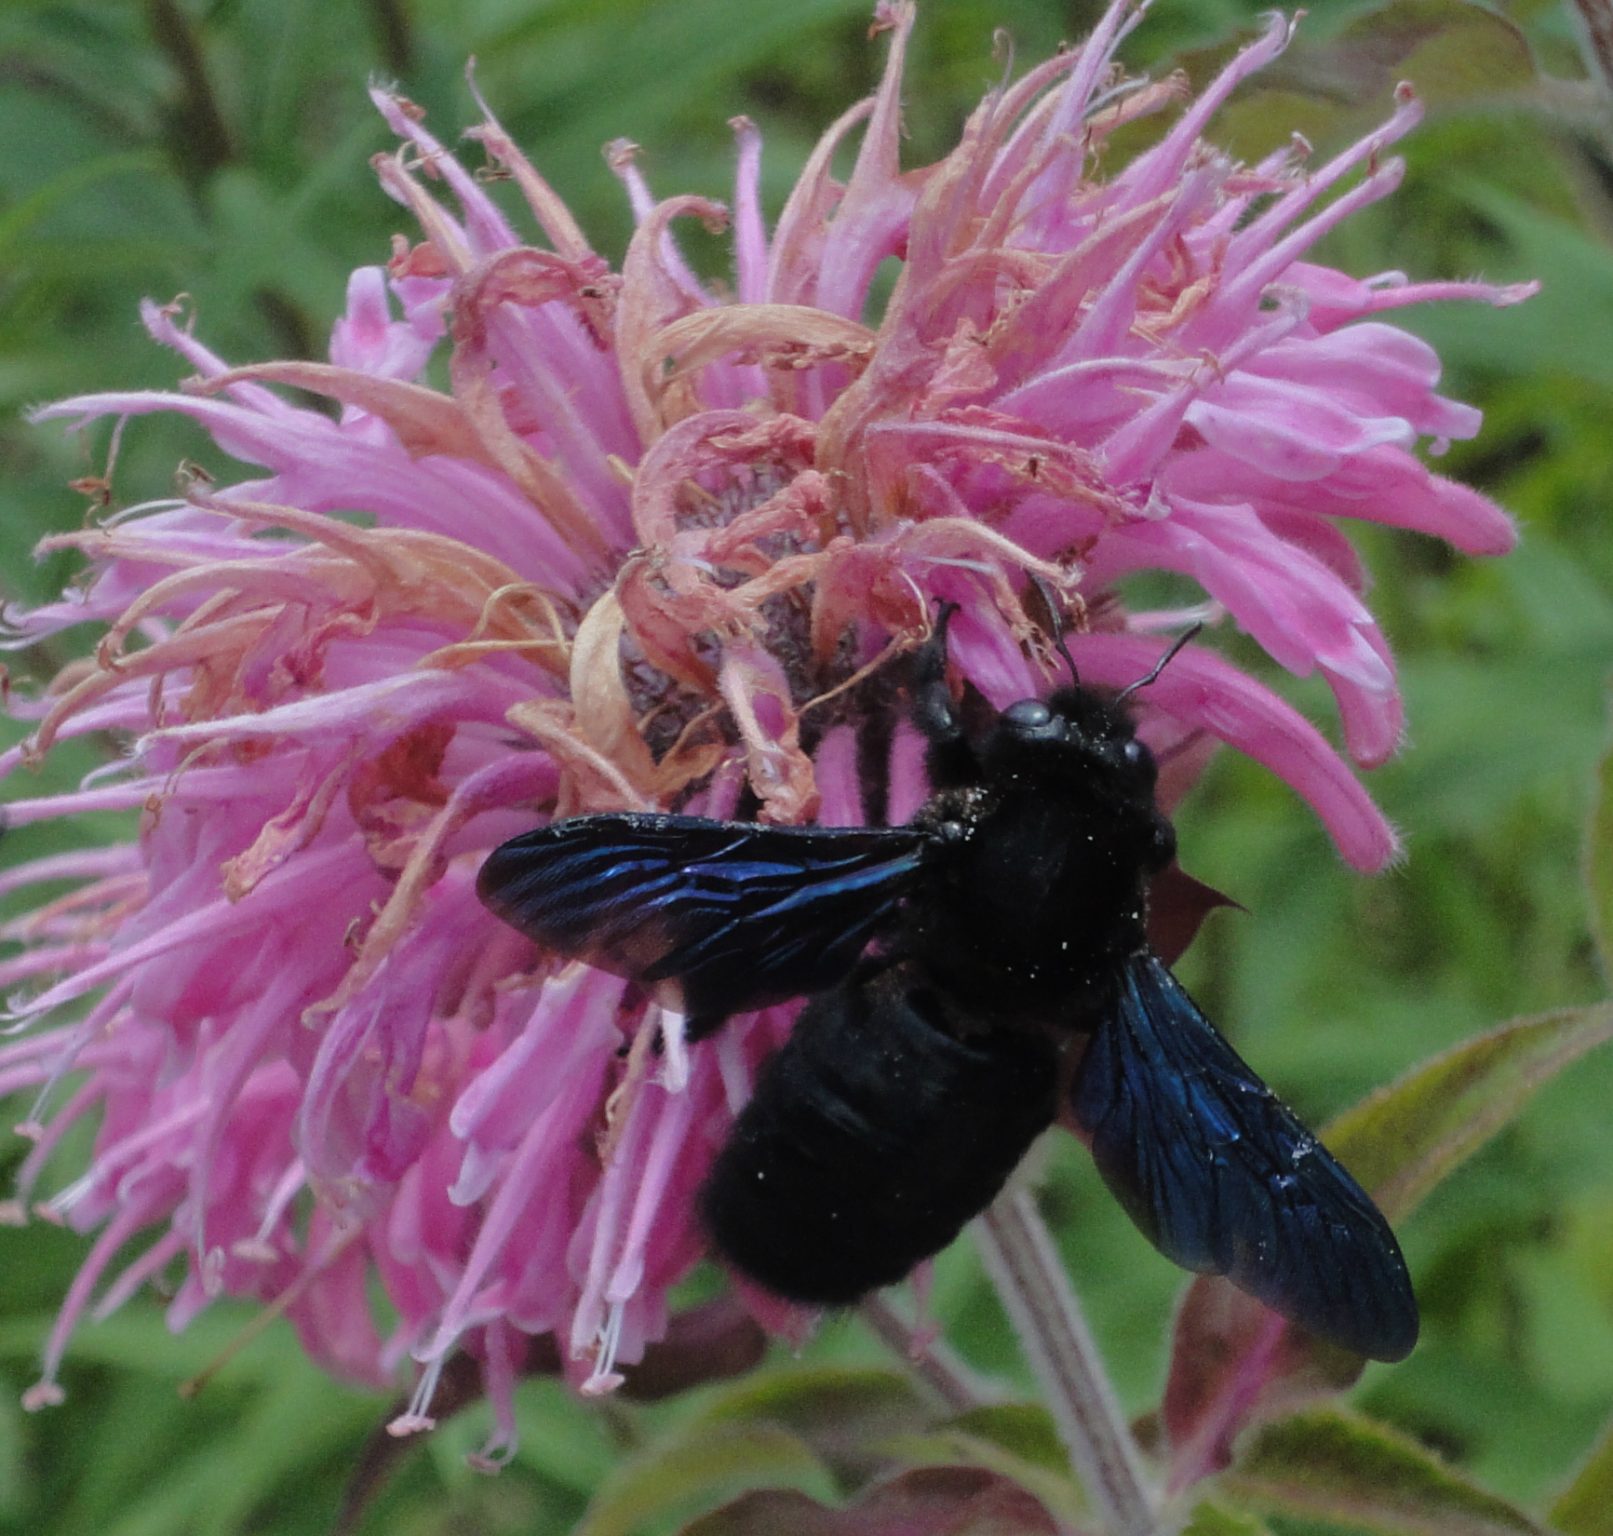 Violet Carpenter Bee